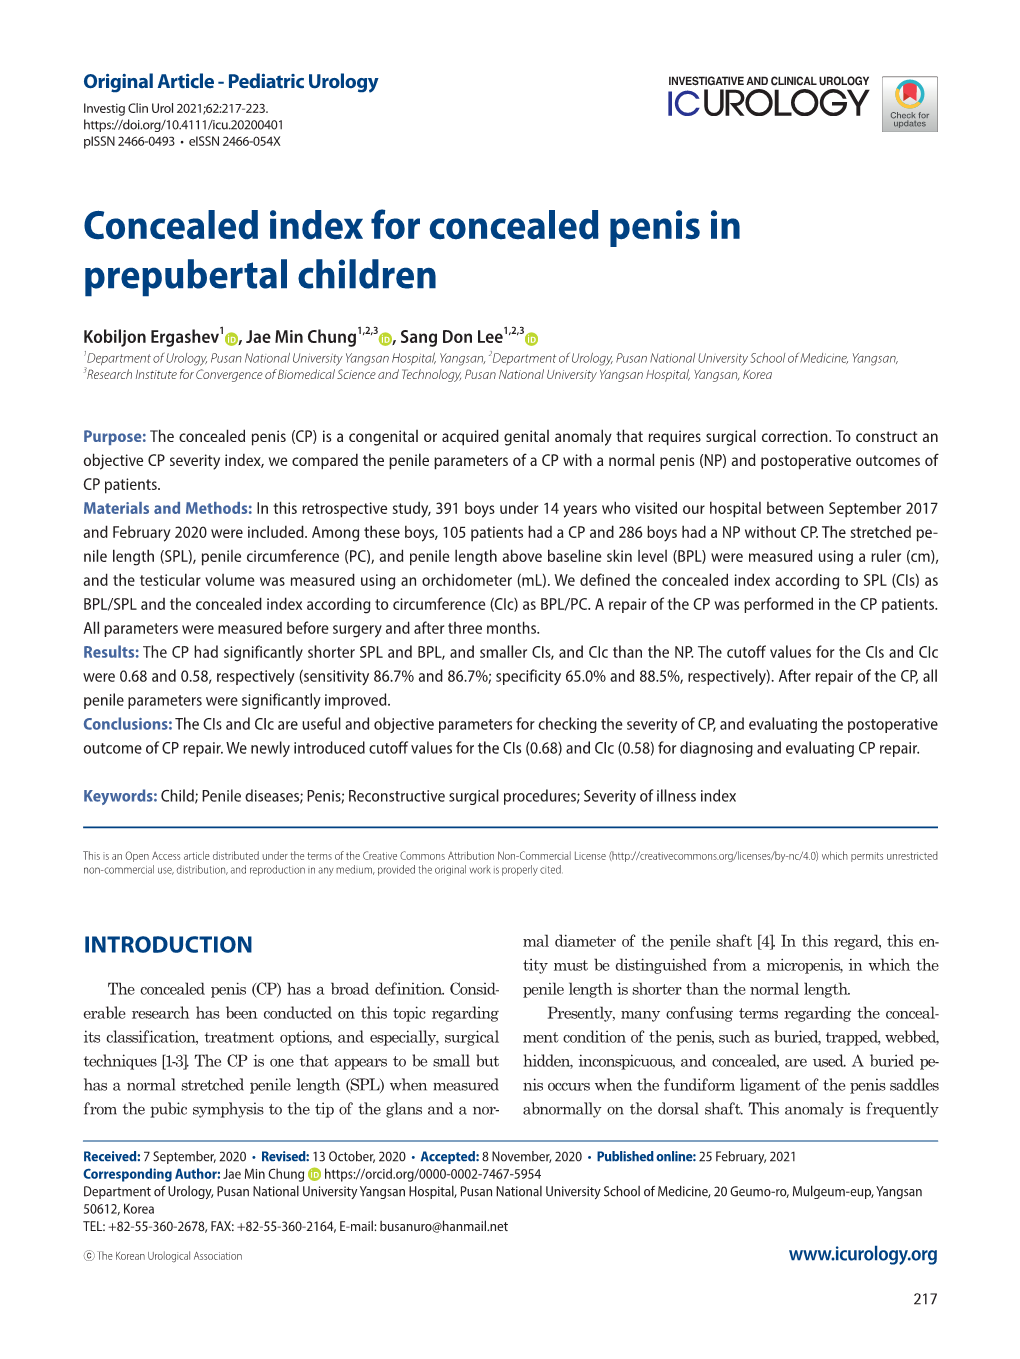 Concealed Index for Concealed Penis in Prepubertal Children